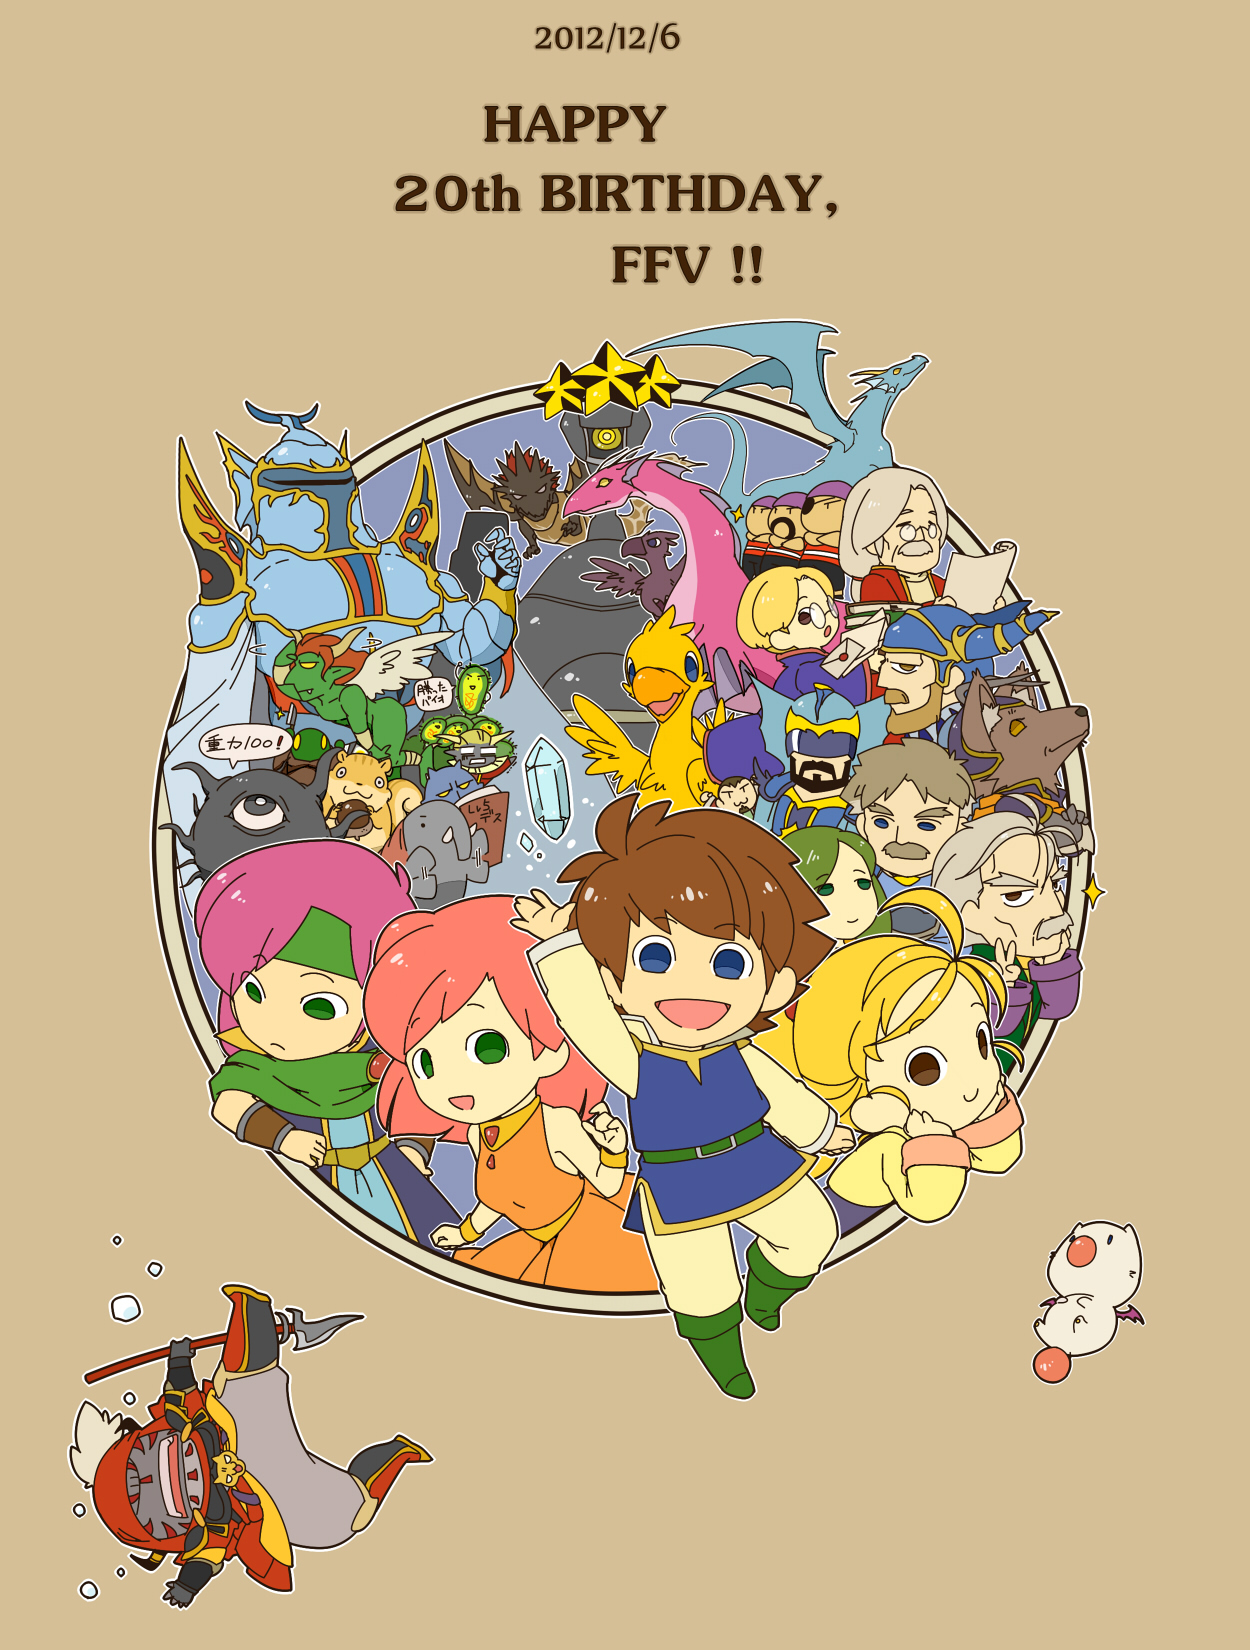 HQ Final Fantasy V Wallpapers | File 816.17Kb